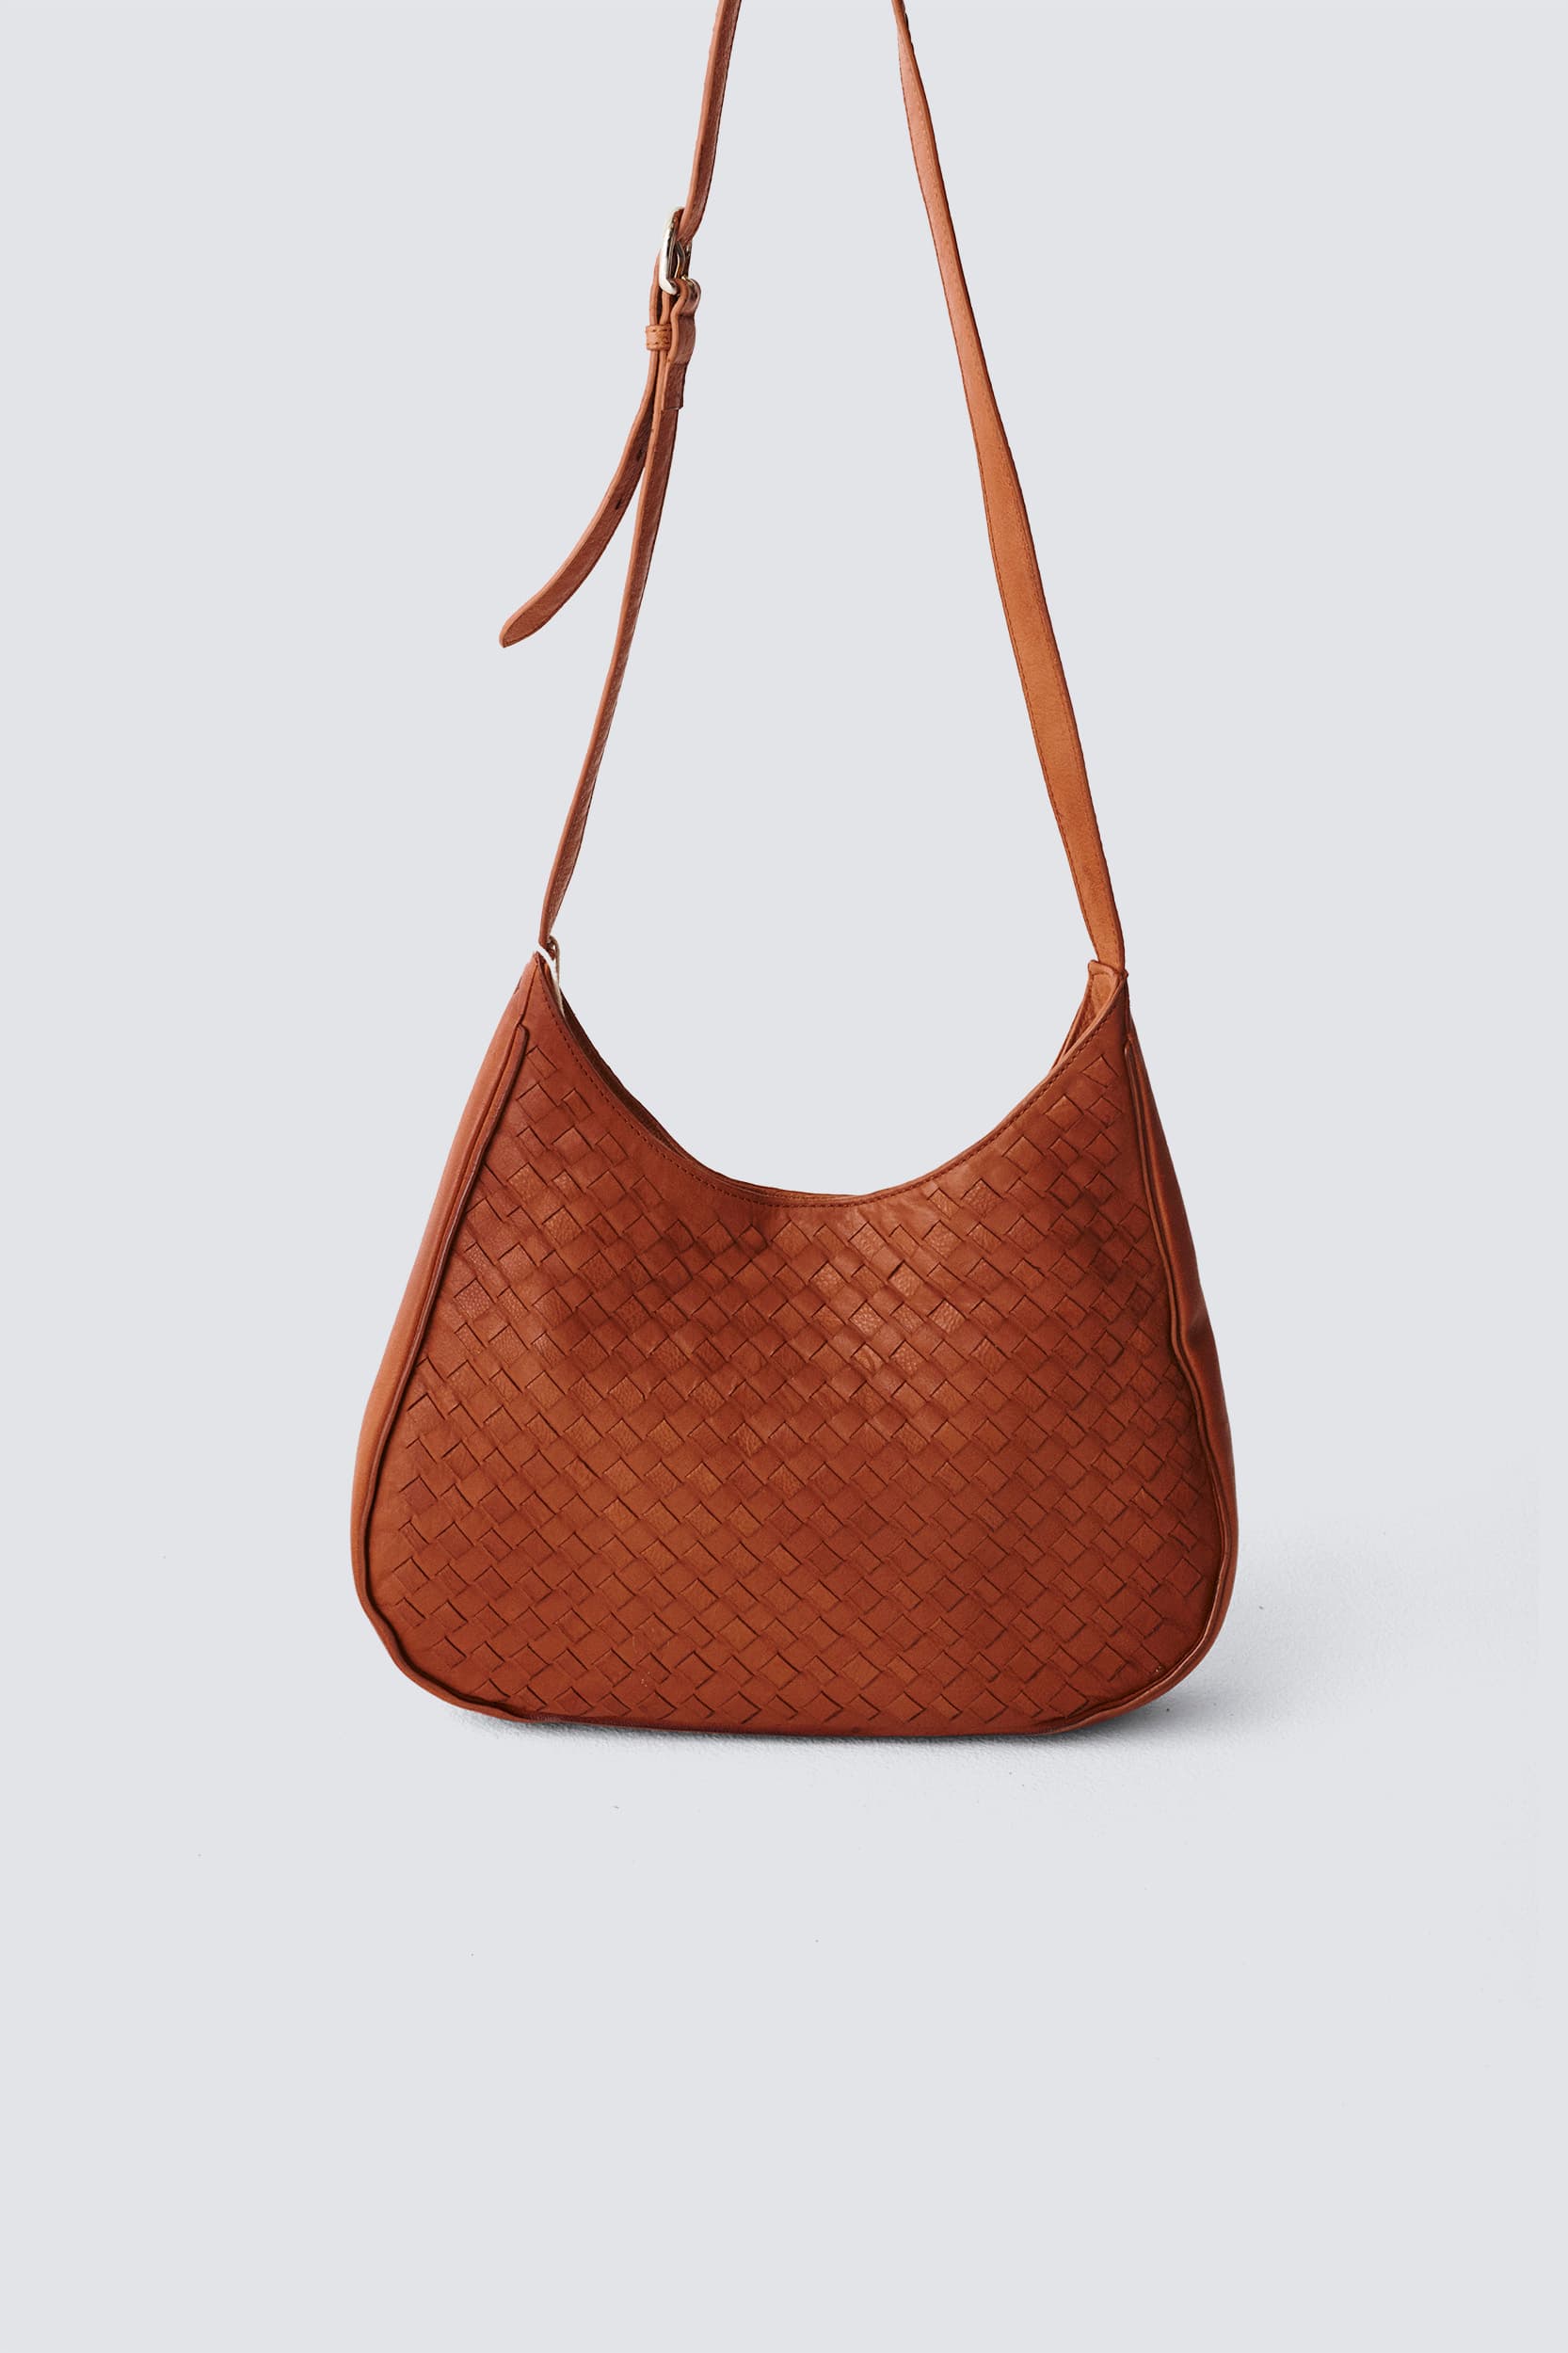 Flat Hobo Leather Shoulder Bag In Tan